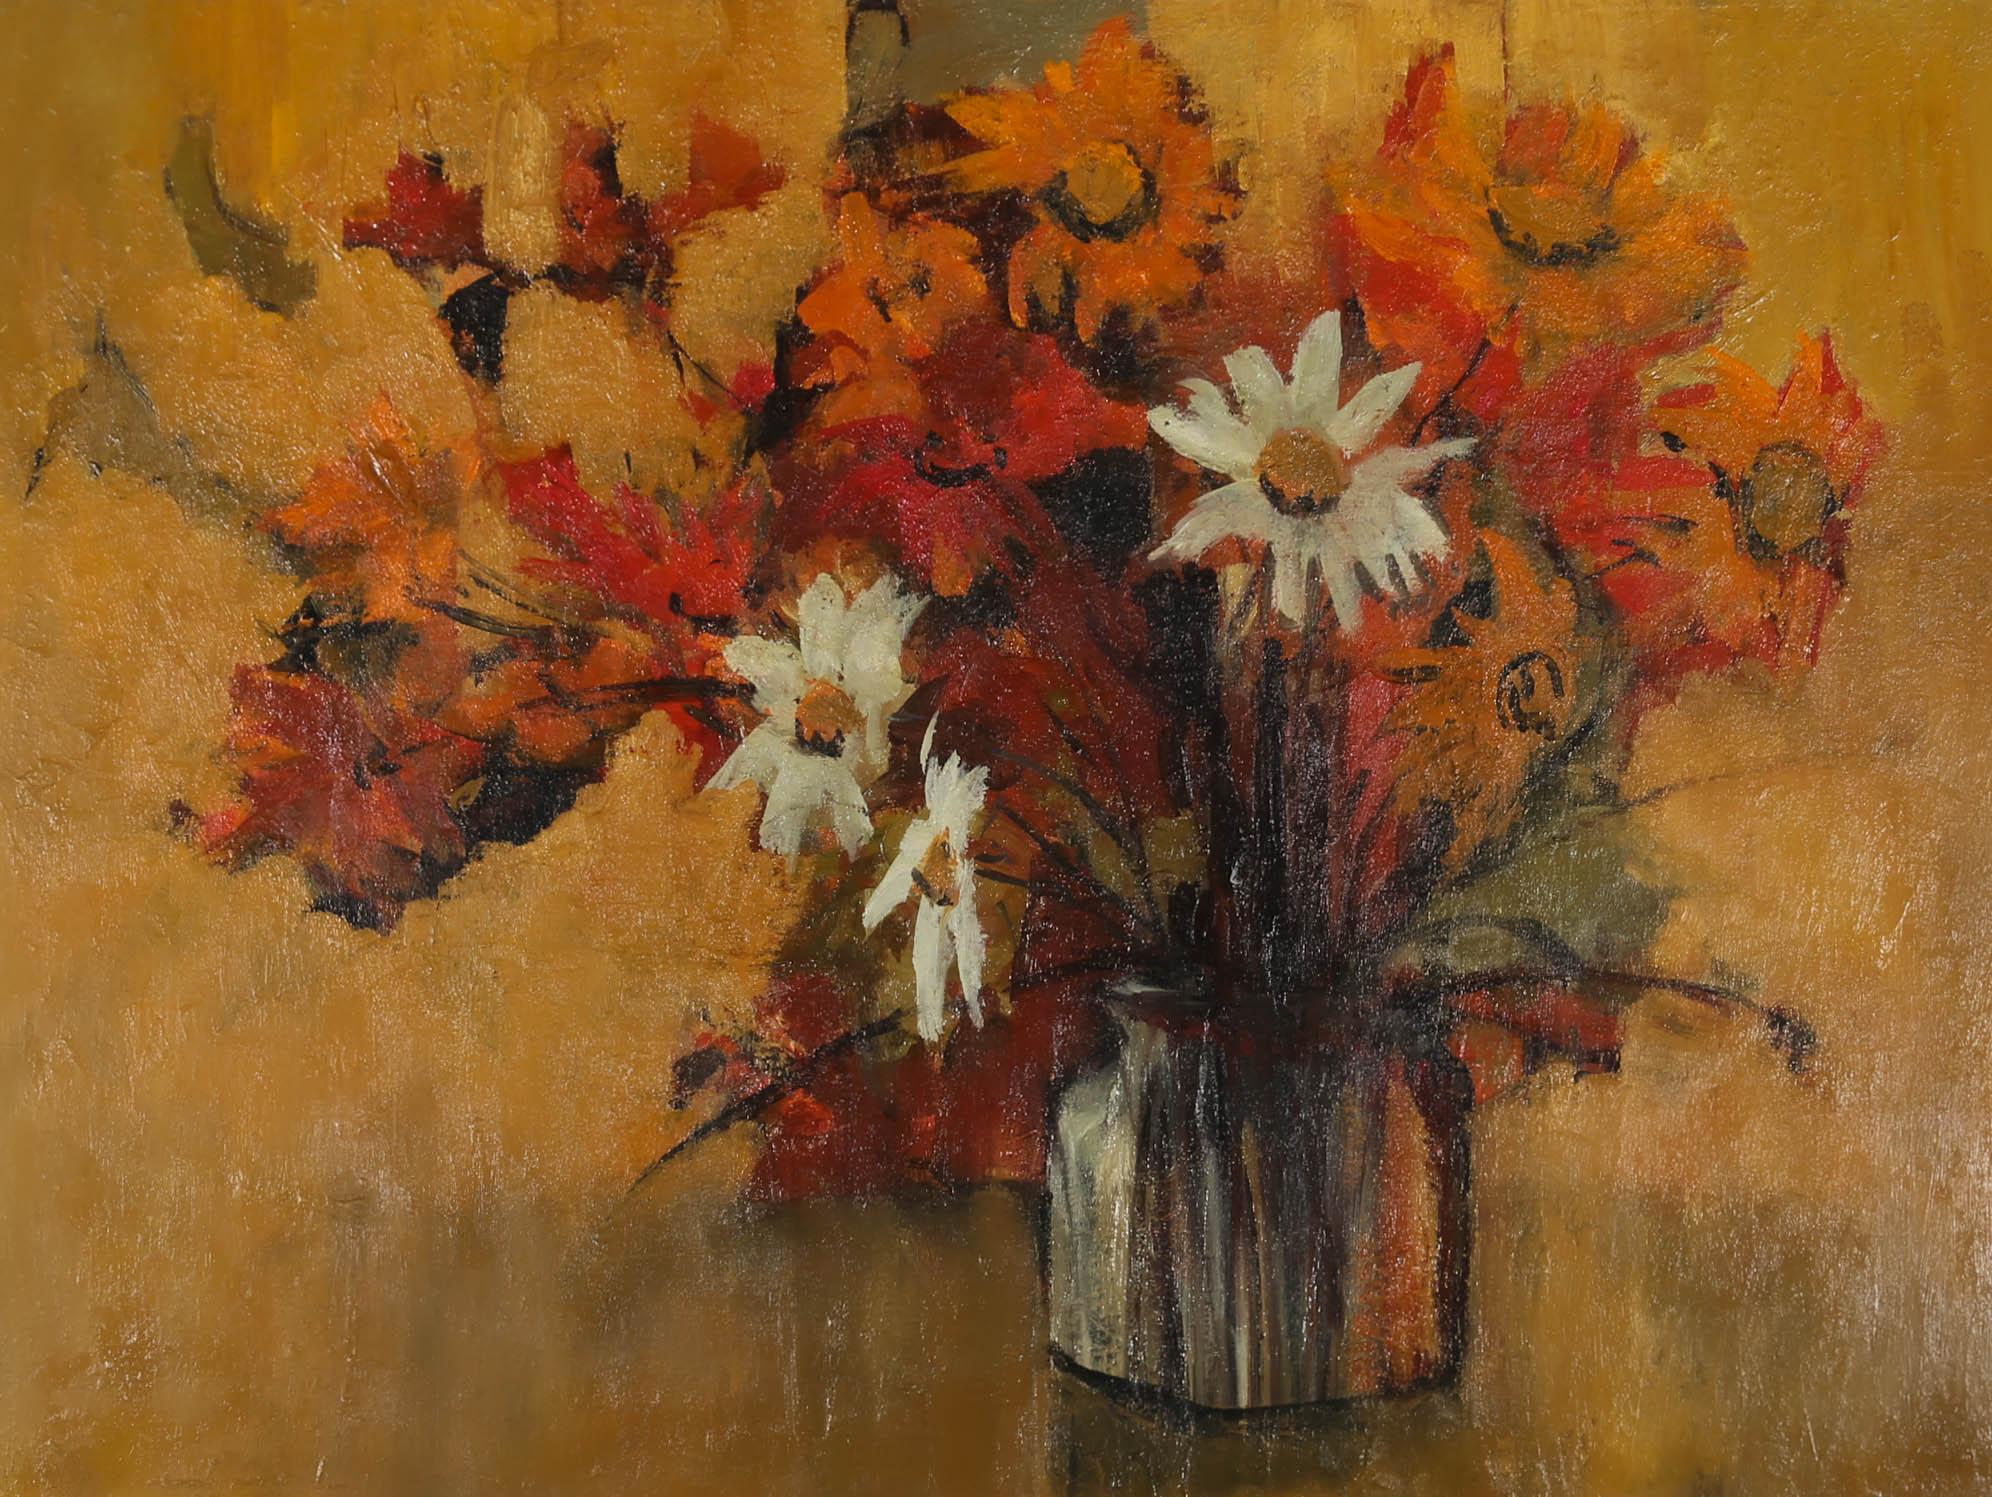 Eine charmante Stilllebenstudie einer Vase mit Wildblumen vor einem orangefarbenen Hintergrund. Der Künstler verwendet ausdrucksstarke Pinselstriche und eine leichte Impasto-Technik, um der Szene Tiefe und Textur zu verleihen. Nicht signiert. An